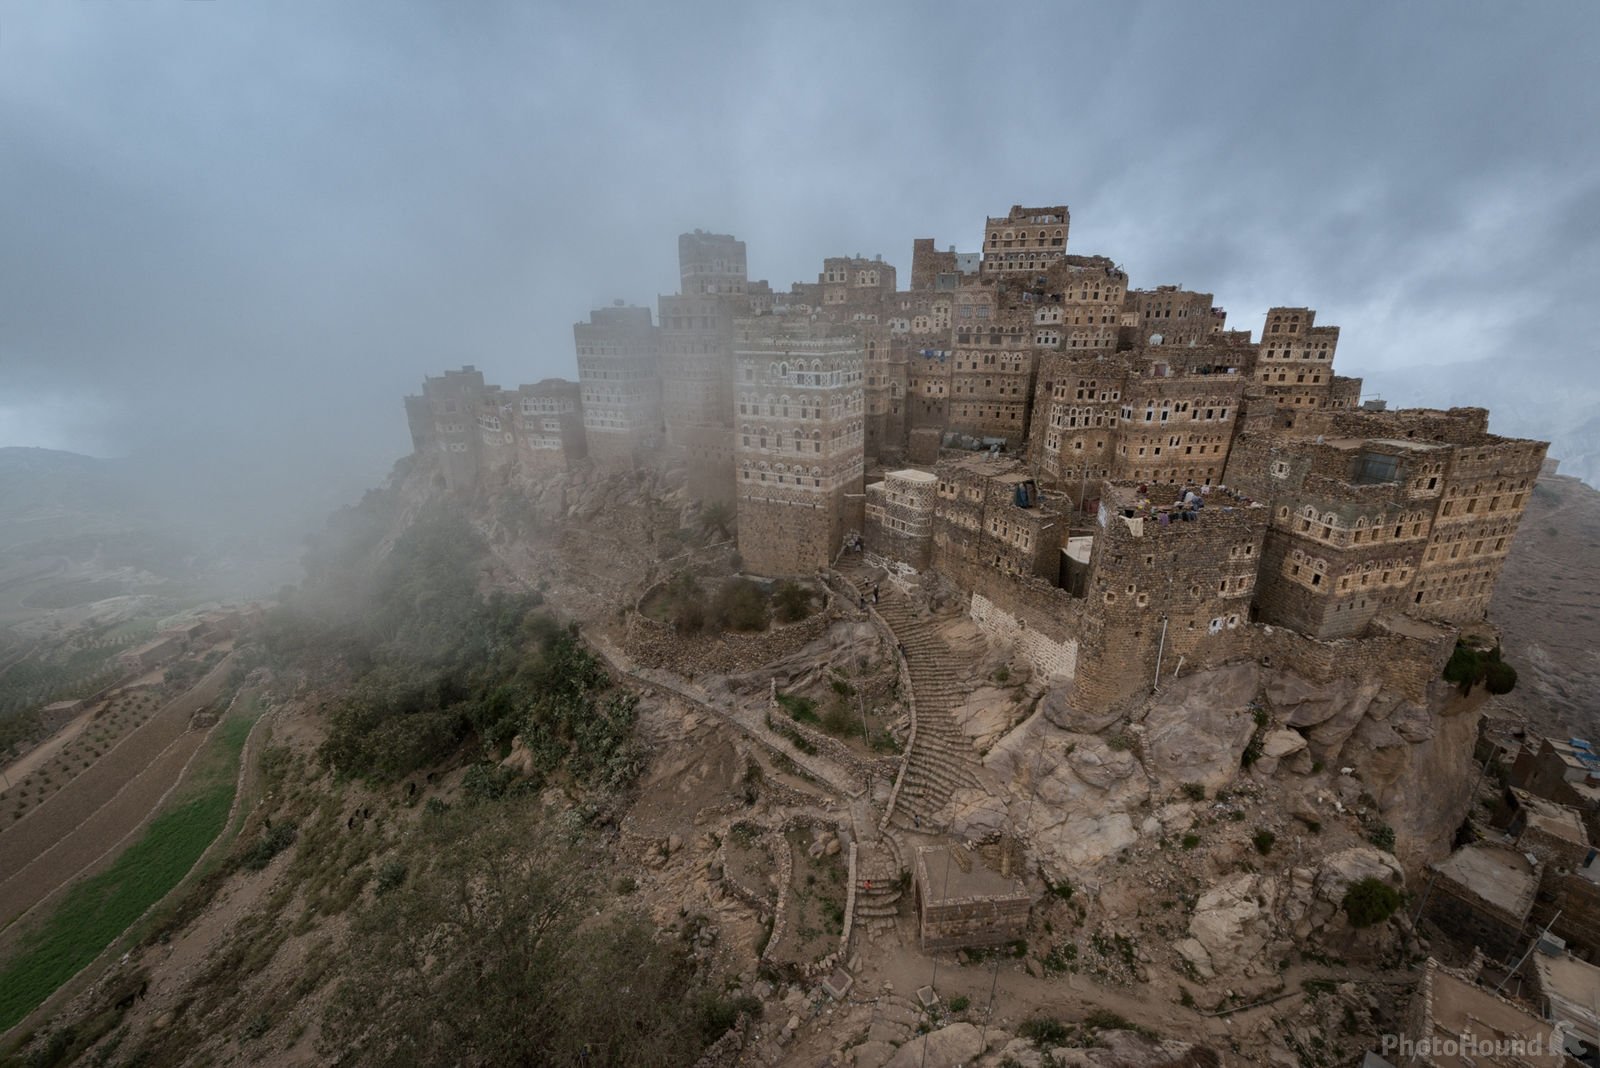 Yemen photo locations